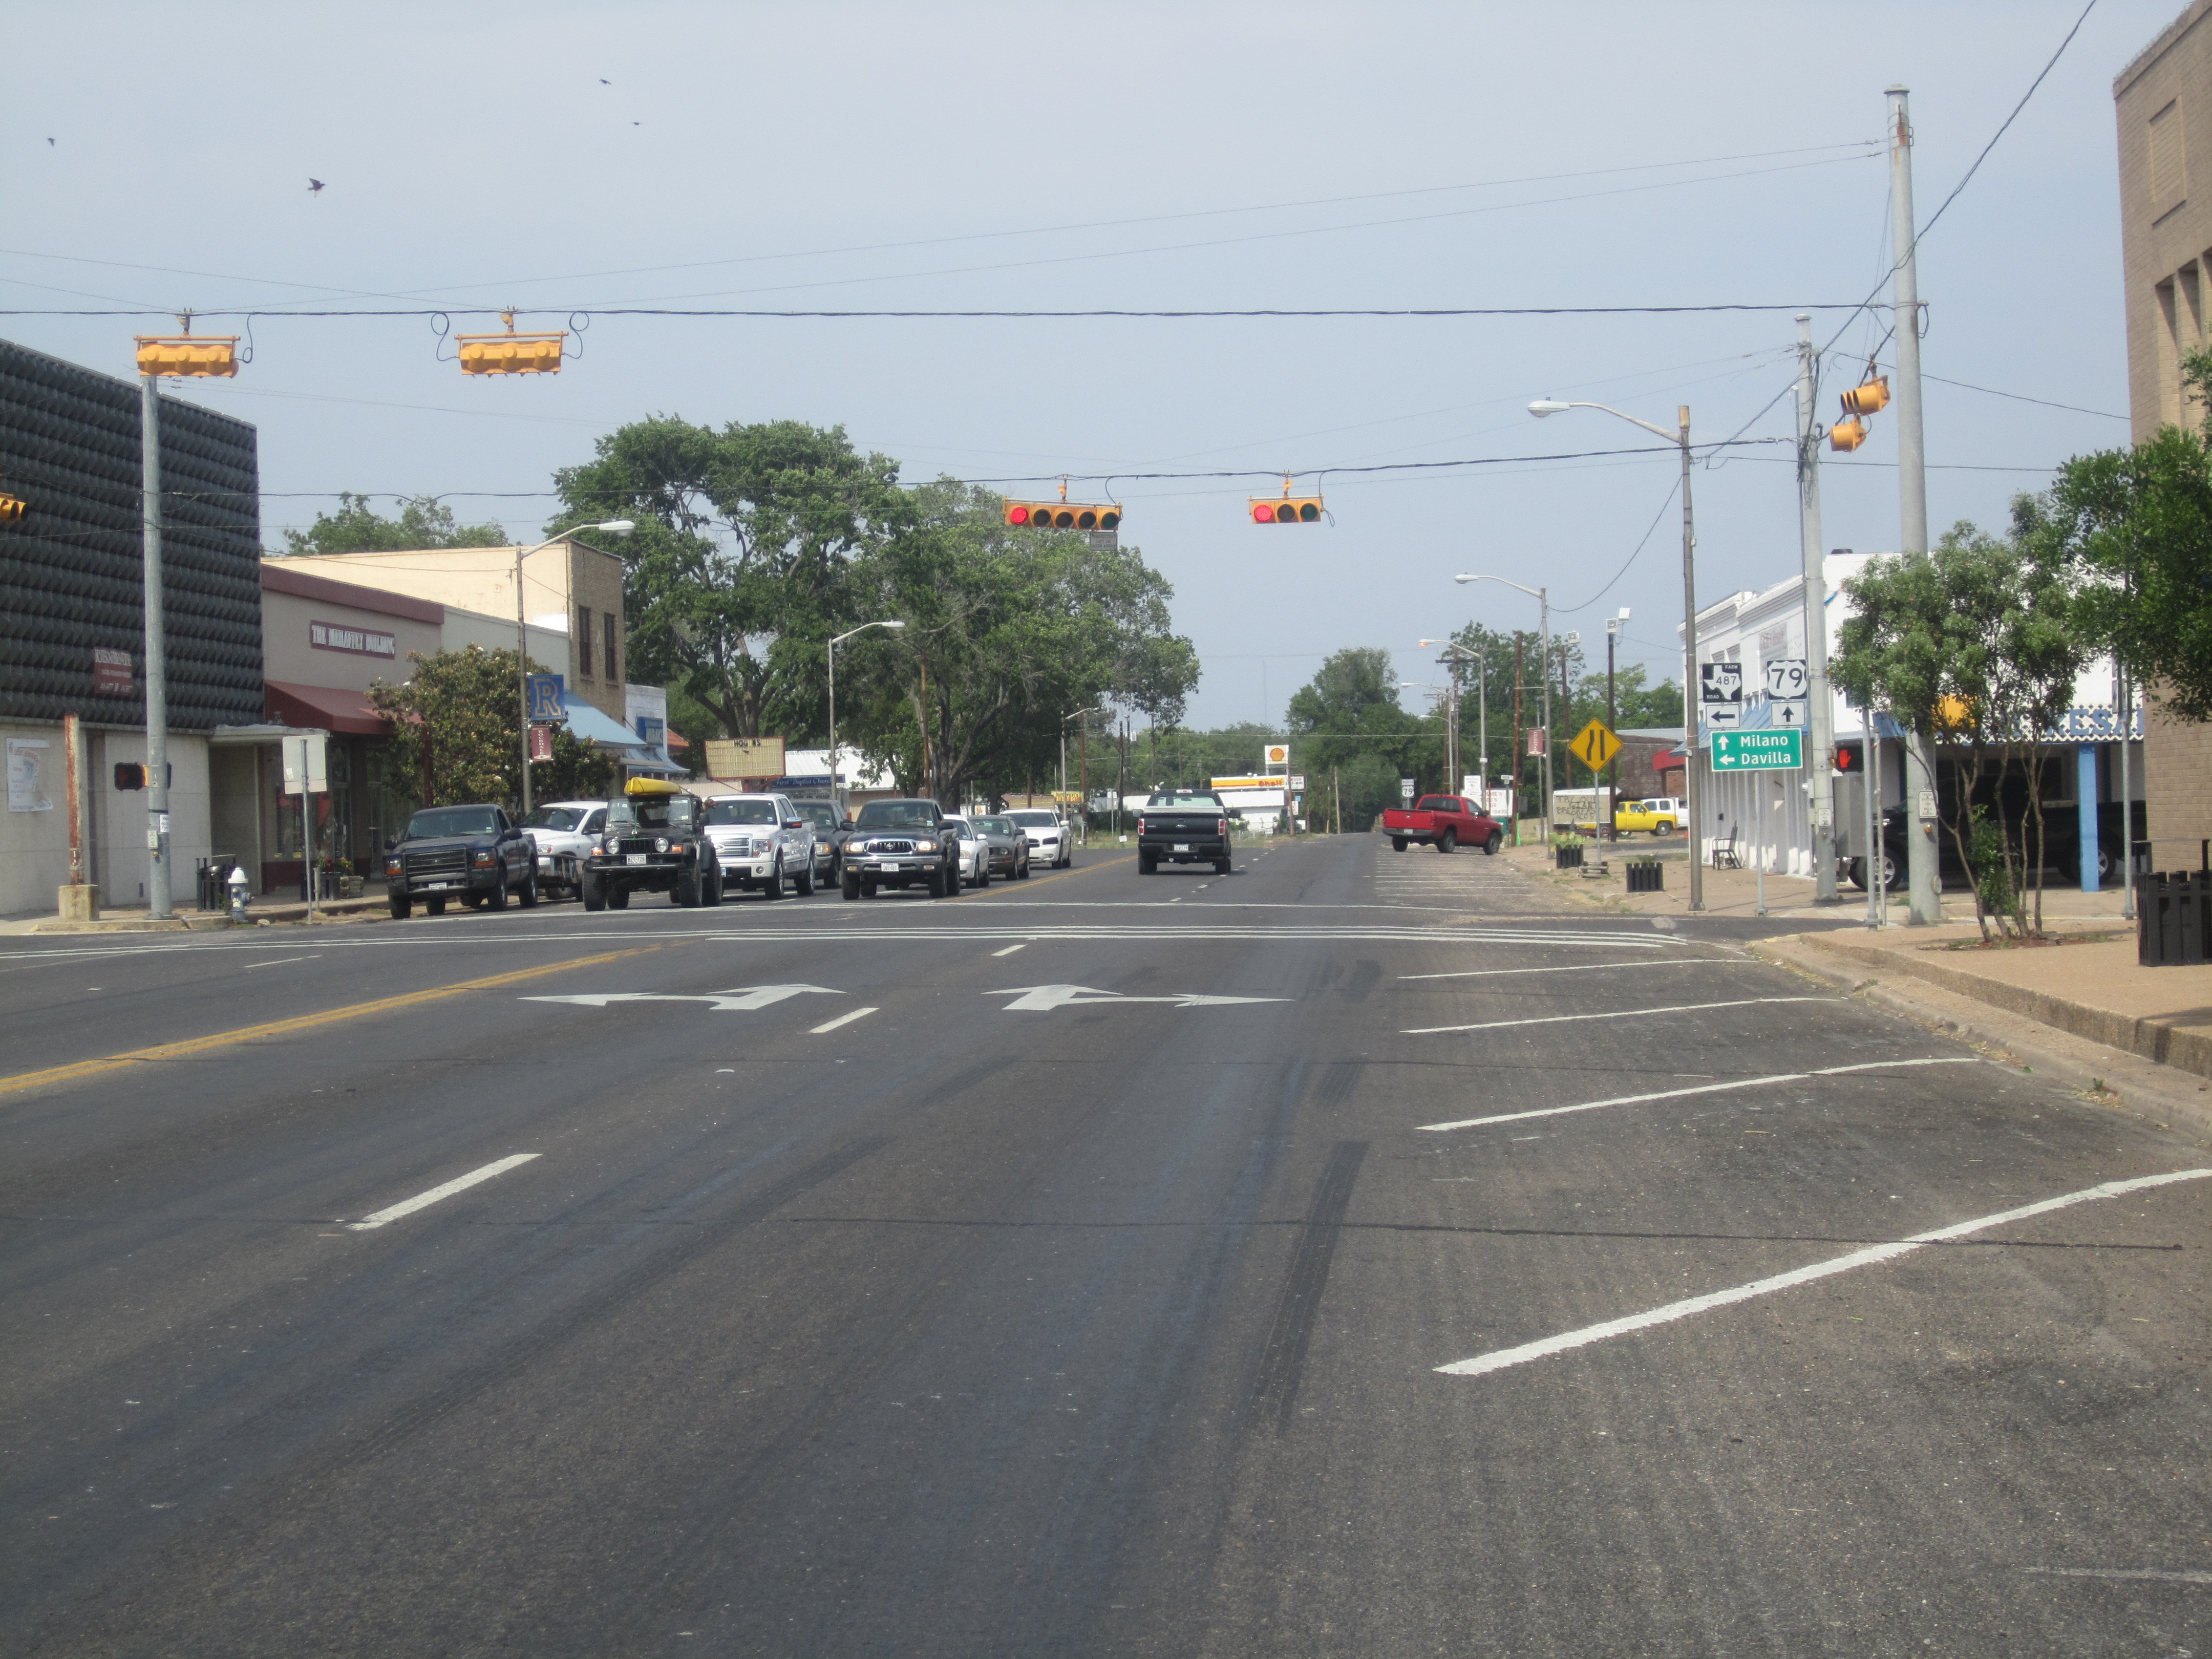 Datei:U.S. Route 79 ist die Hauptstraße von Rockdale, TX IMG 2255.JPG – Wikimedia Commons